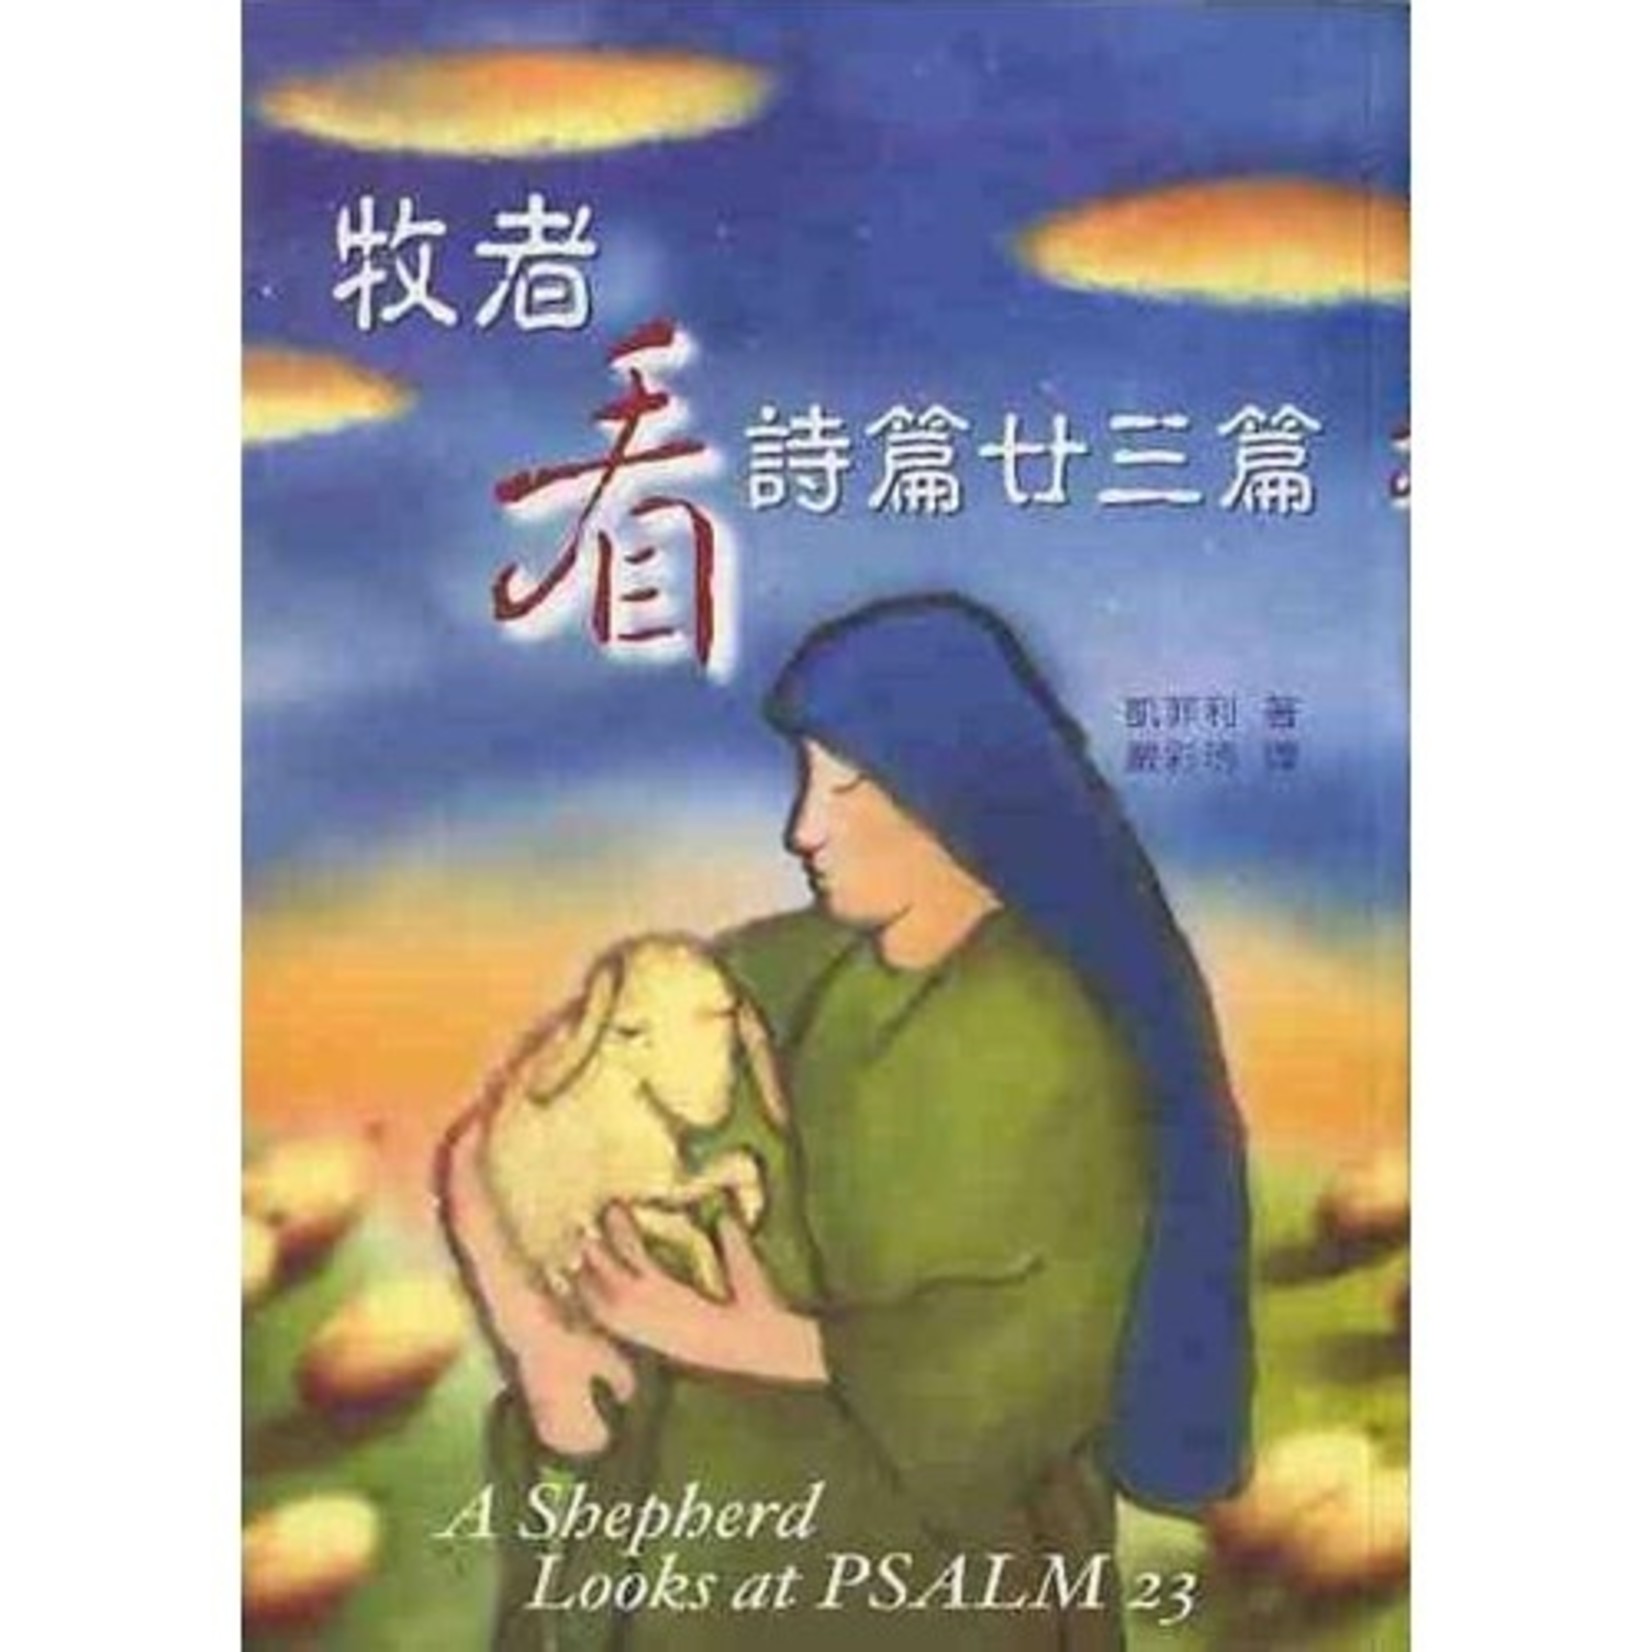 中國主日學協會 China Sunday School Association 牧者看詩篇廿三篇 | A Shepherd Looks at PSALM23